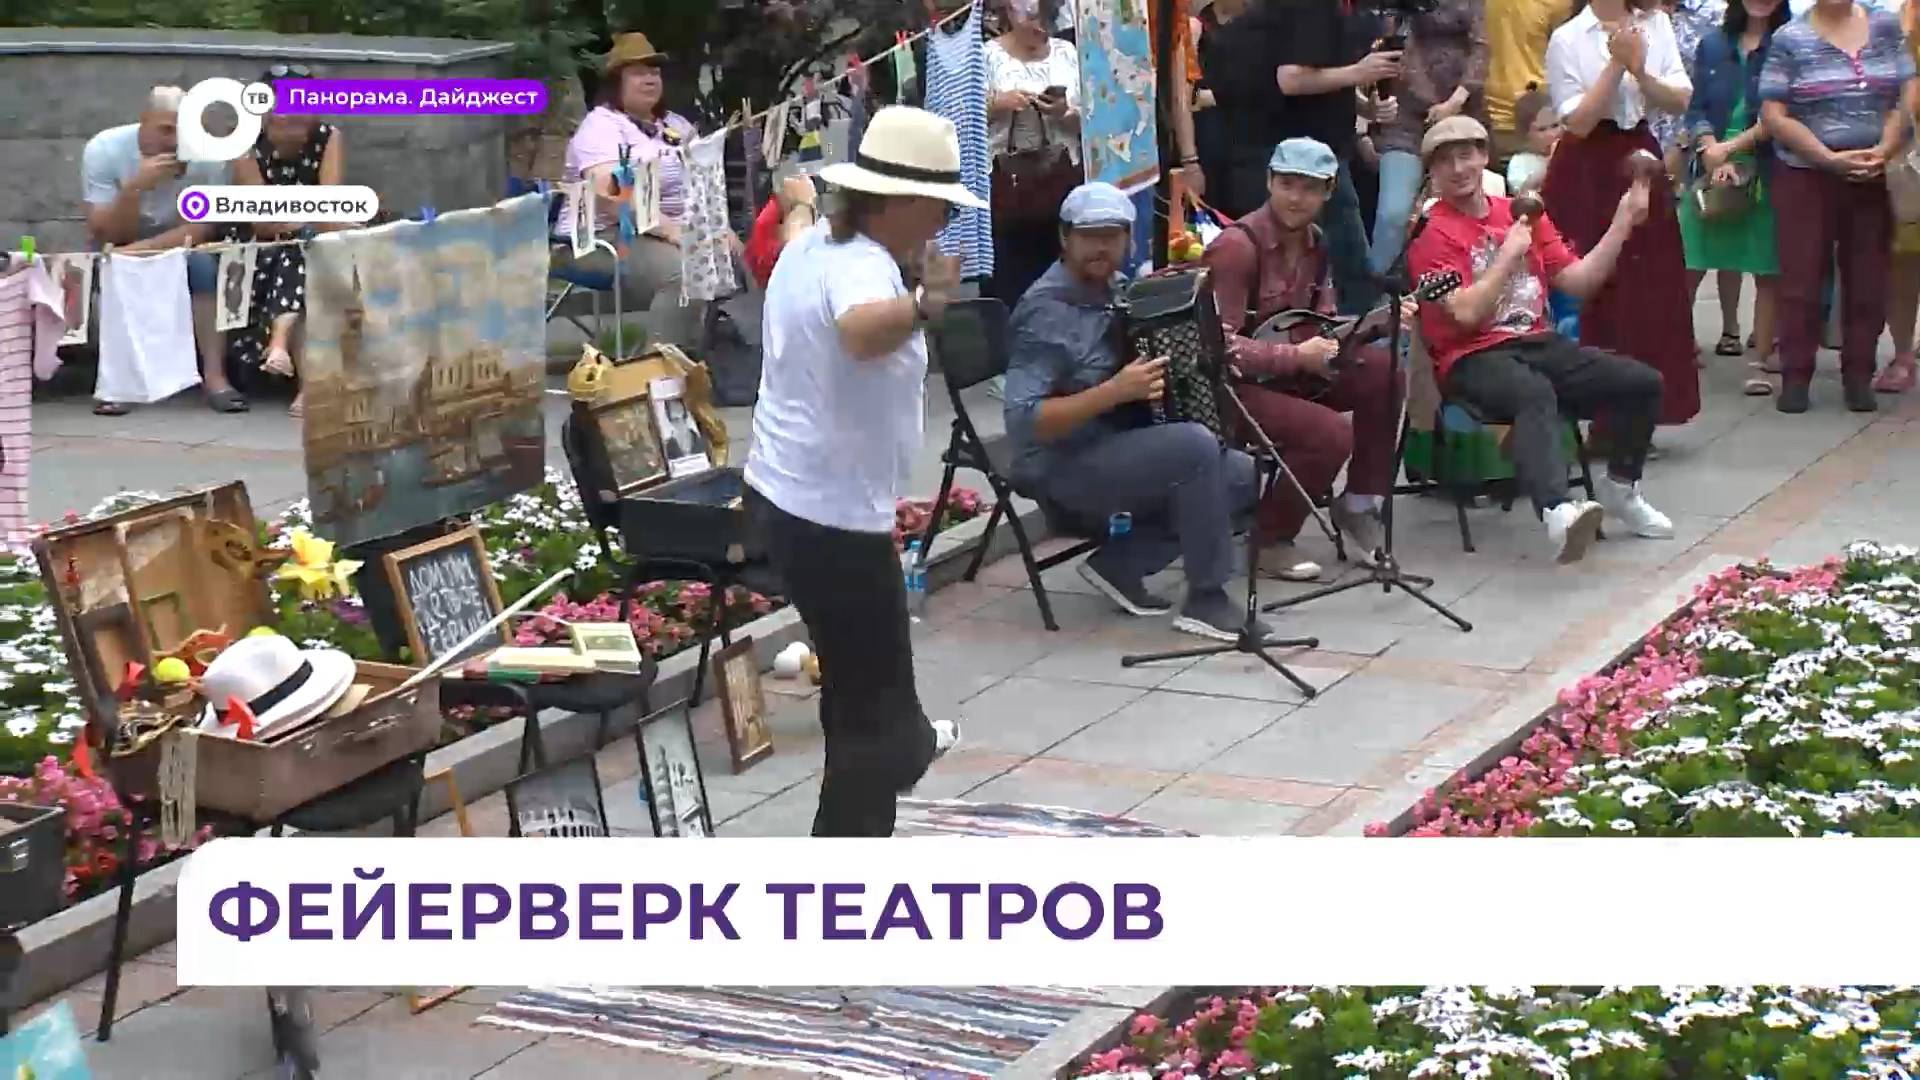 Фестиваль уличных театров захватил центр Владивостока сразу и безоговорочно